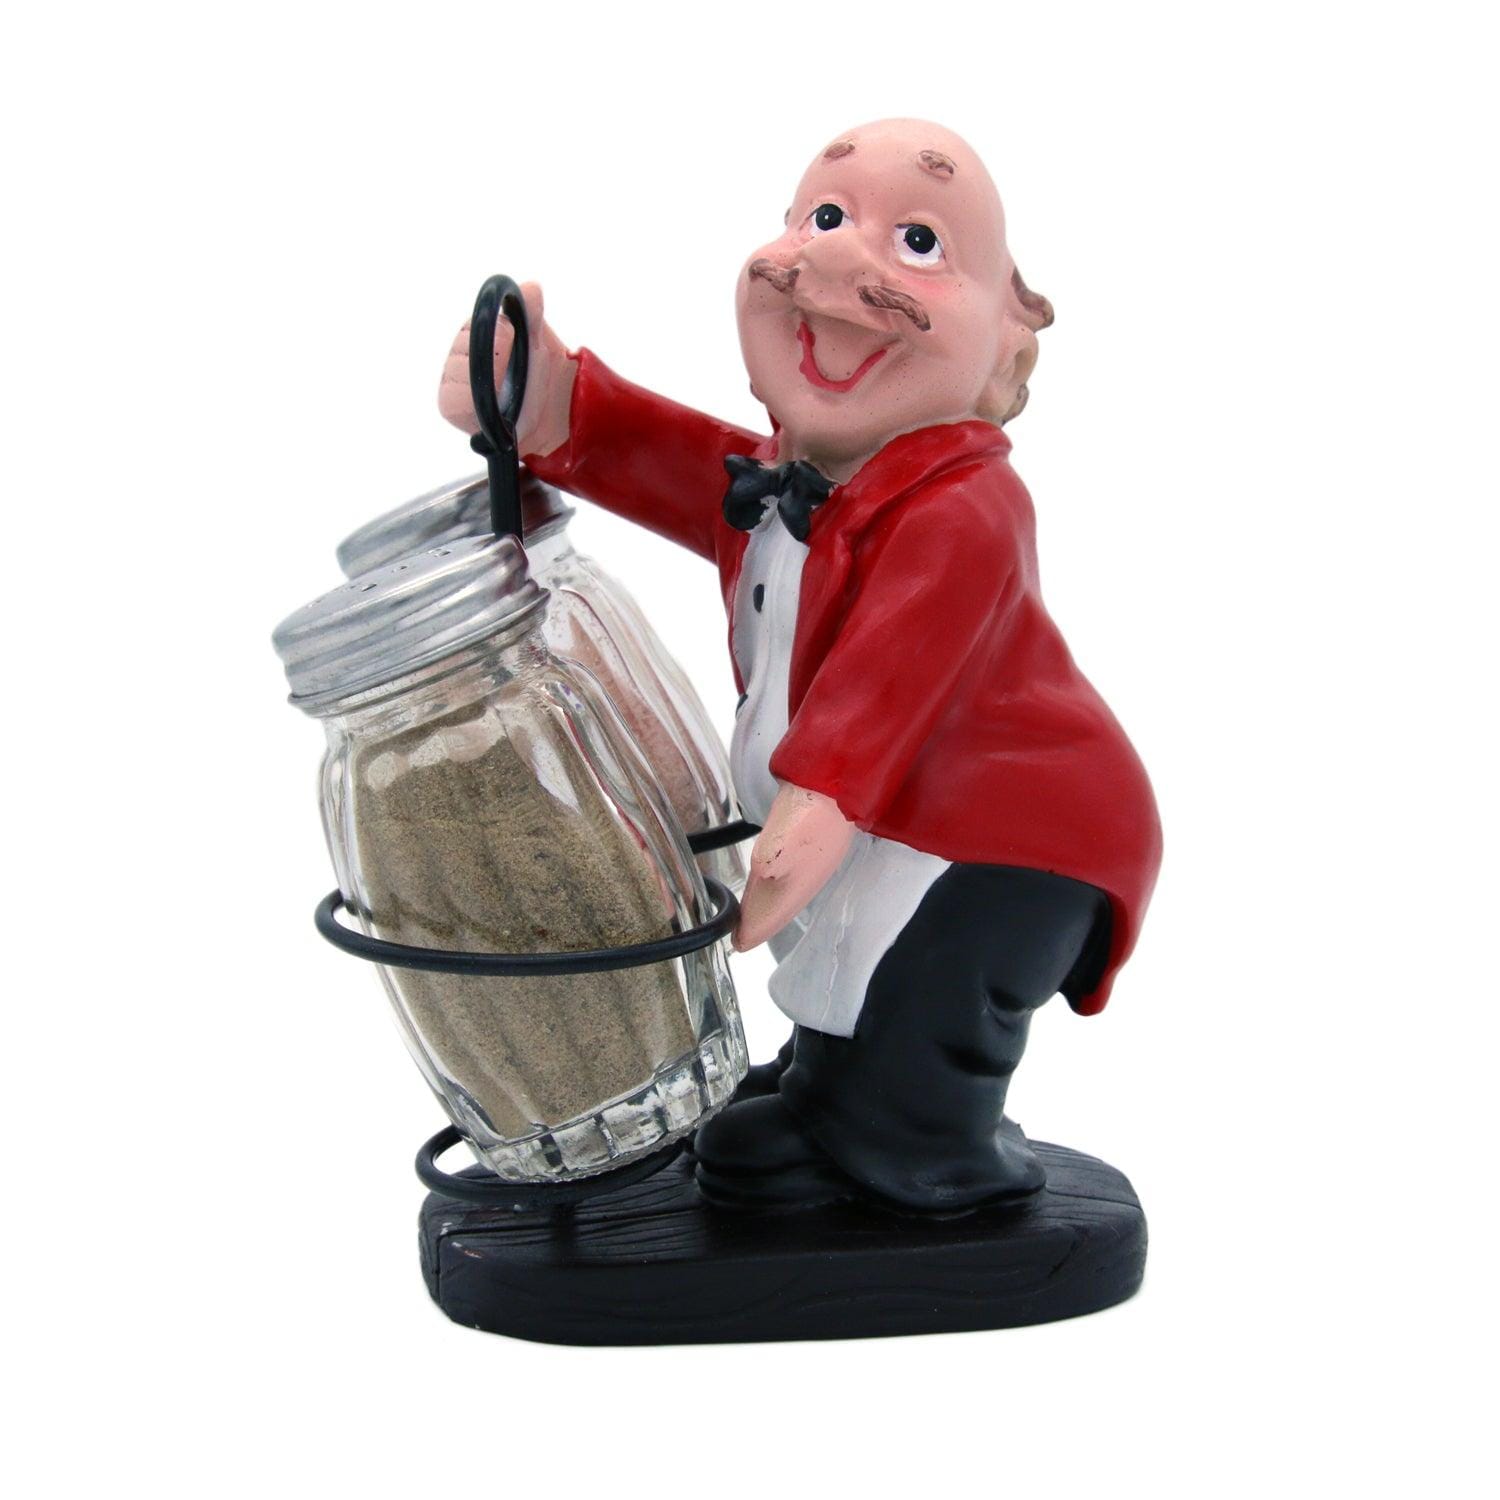 Whacky Waiter in Red Coat Figurine Resin Salt & Pepper Shakers Holder Set